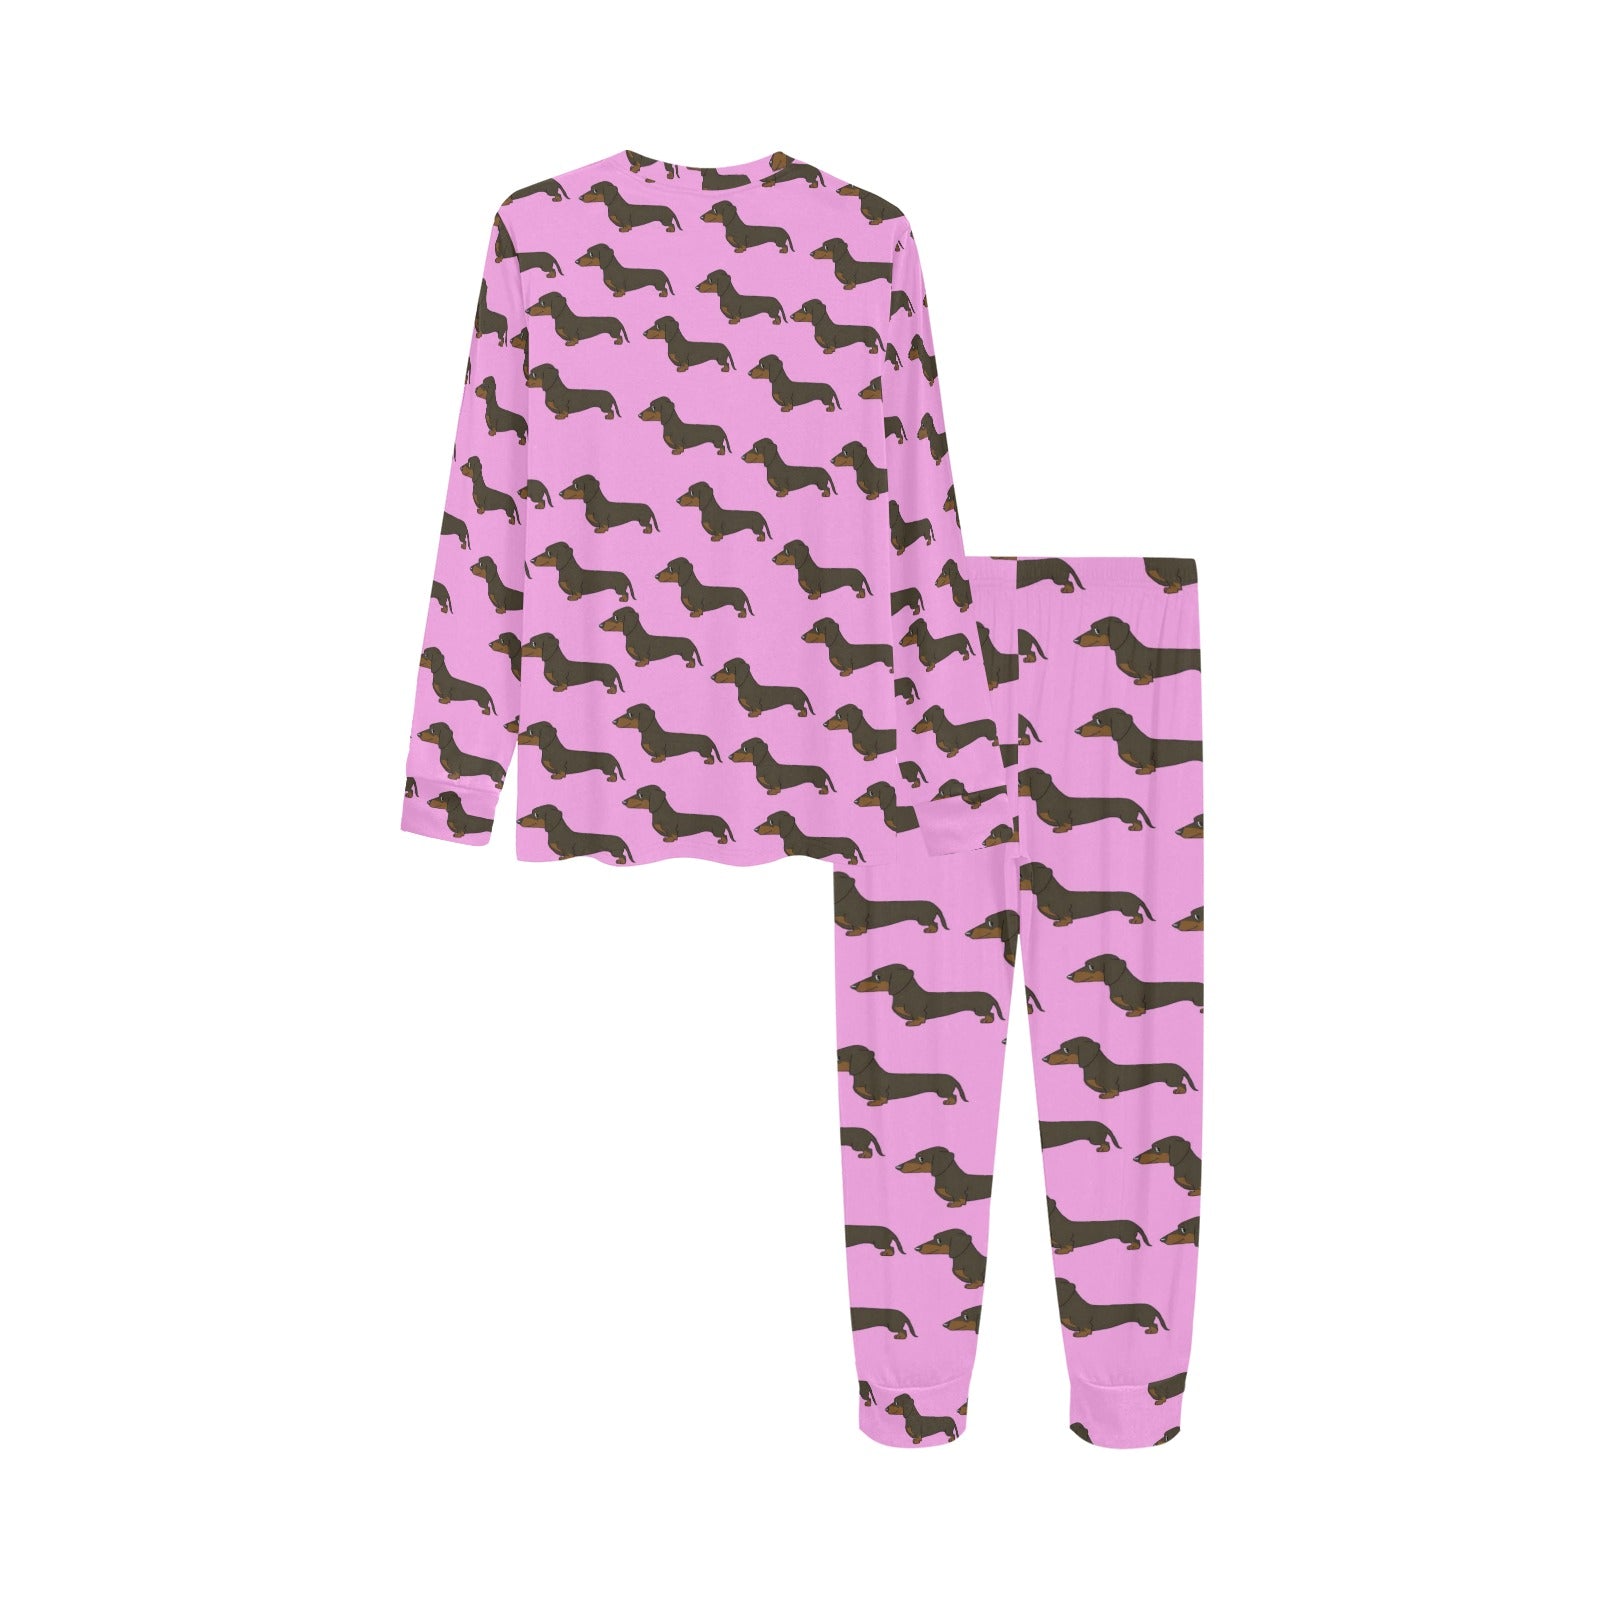 2 Piece Dachshund Children's Pajama Set - Pink